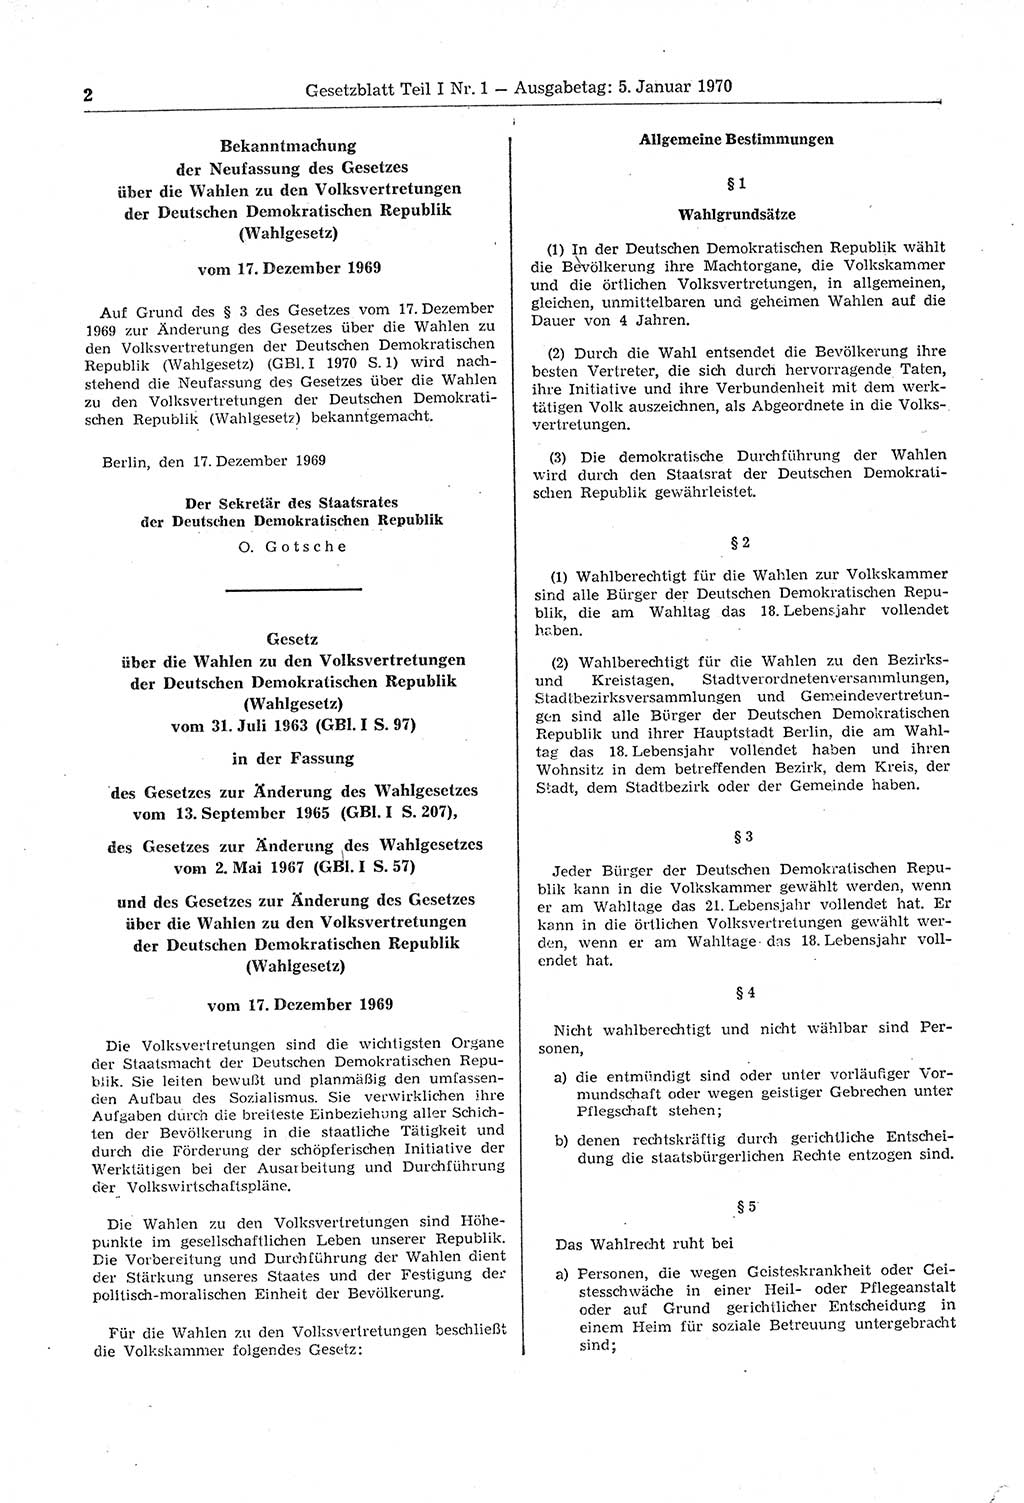 Gesetzblatt (GBl.) der Deutschen Demokratischen Republik (DDR) Teil Ⅰ 1970, Seite 2 (GBl. DDR Ⅰ 1970, S. 2)